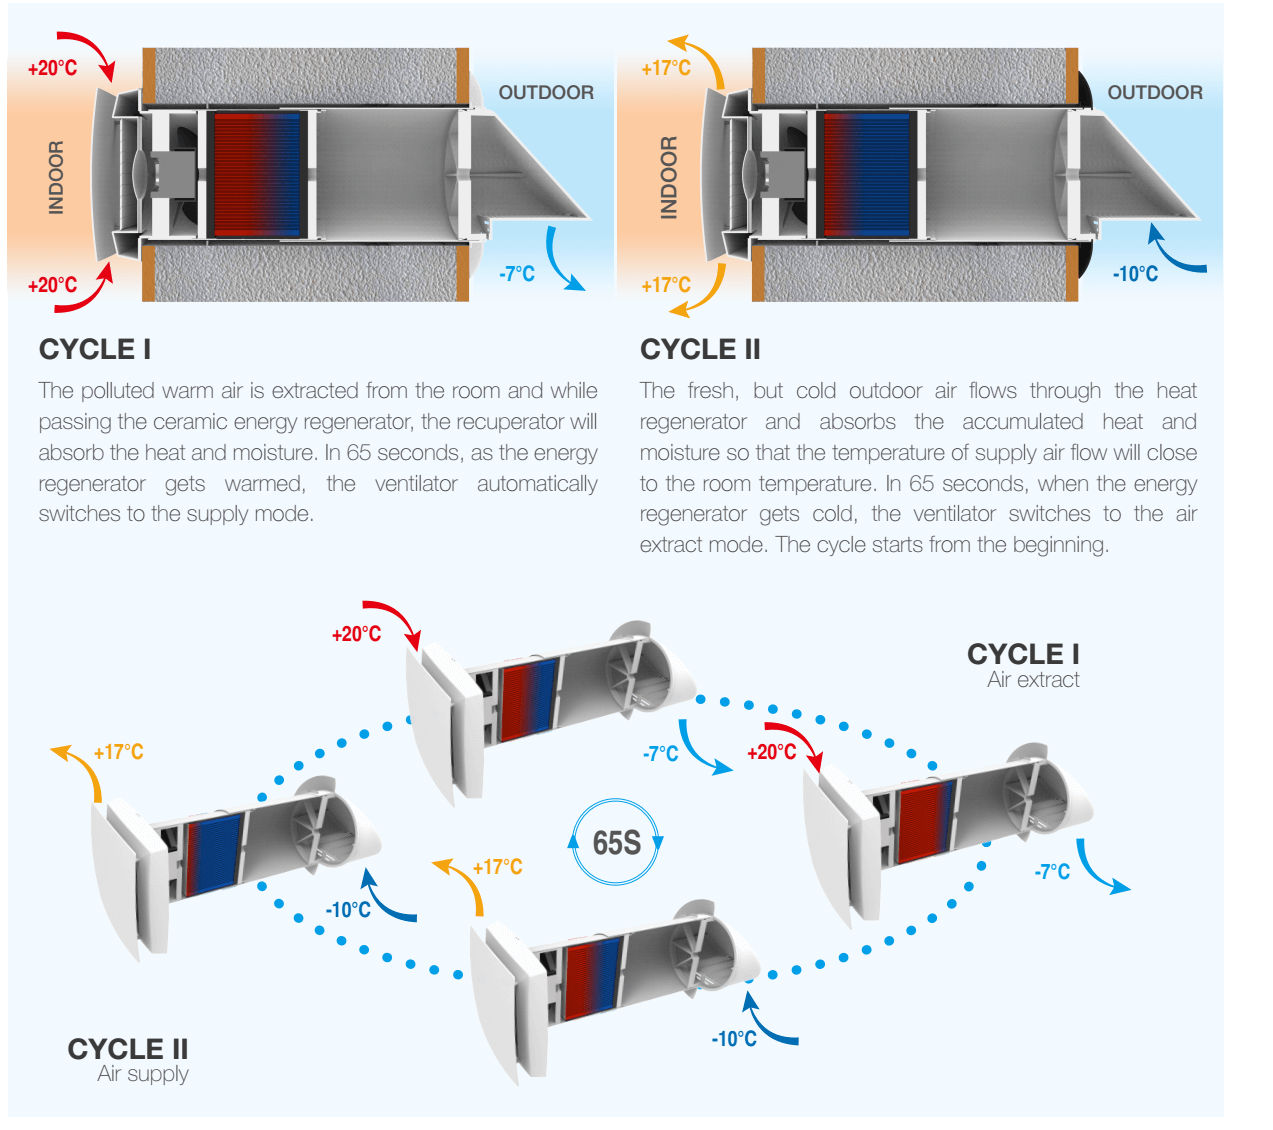 enkelkamer energieherwinning ventilator (1)